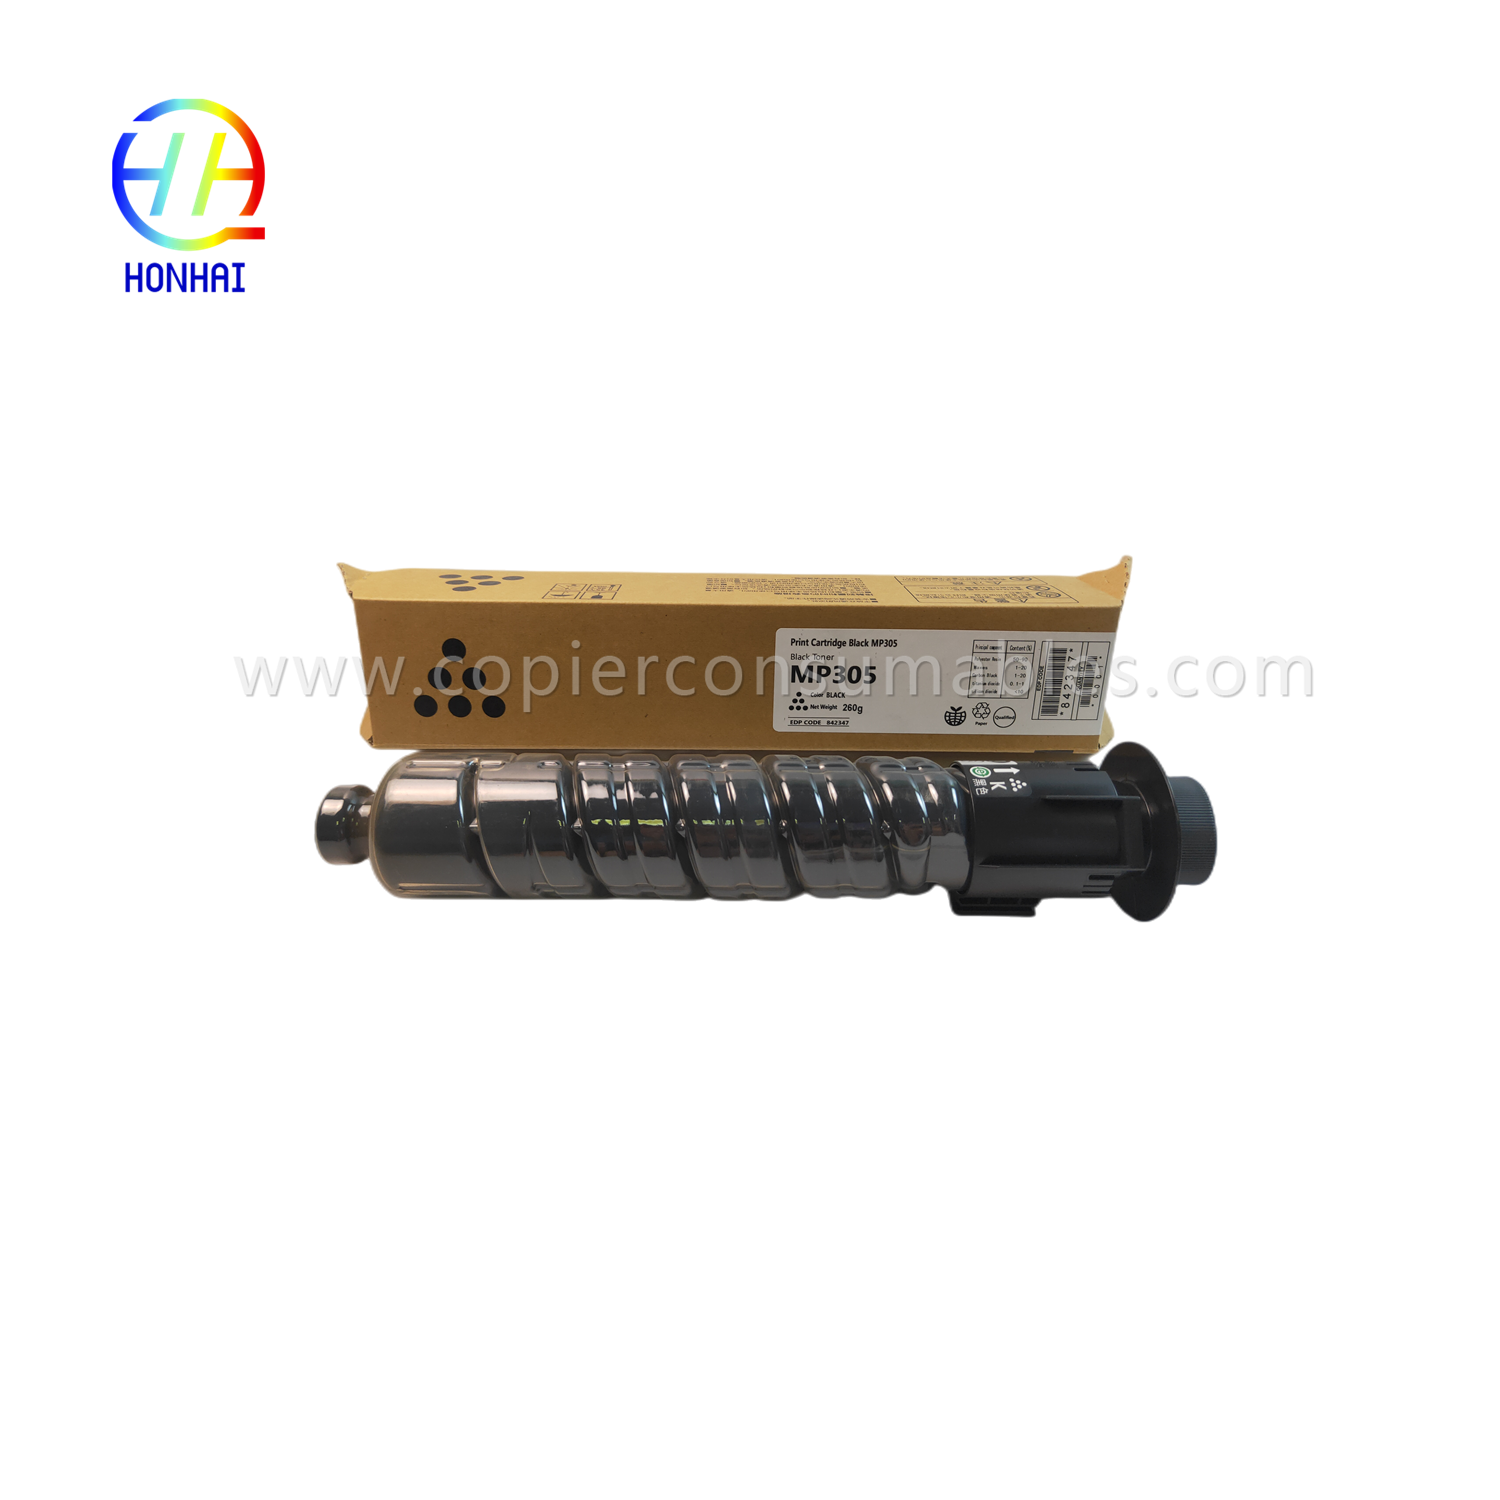 https://www.copierhonhaitech.com/toner-cartridge-japan-powder-for-ricoh-ref-842347-842141-mp-305-mp305spf-mp-305sp-product/